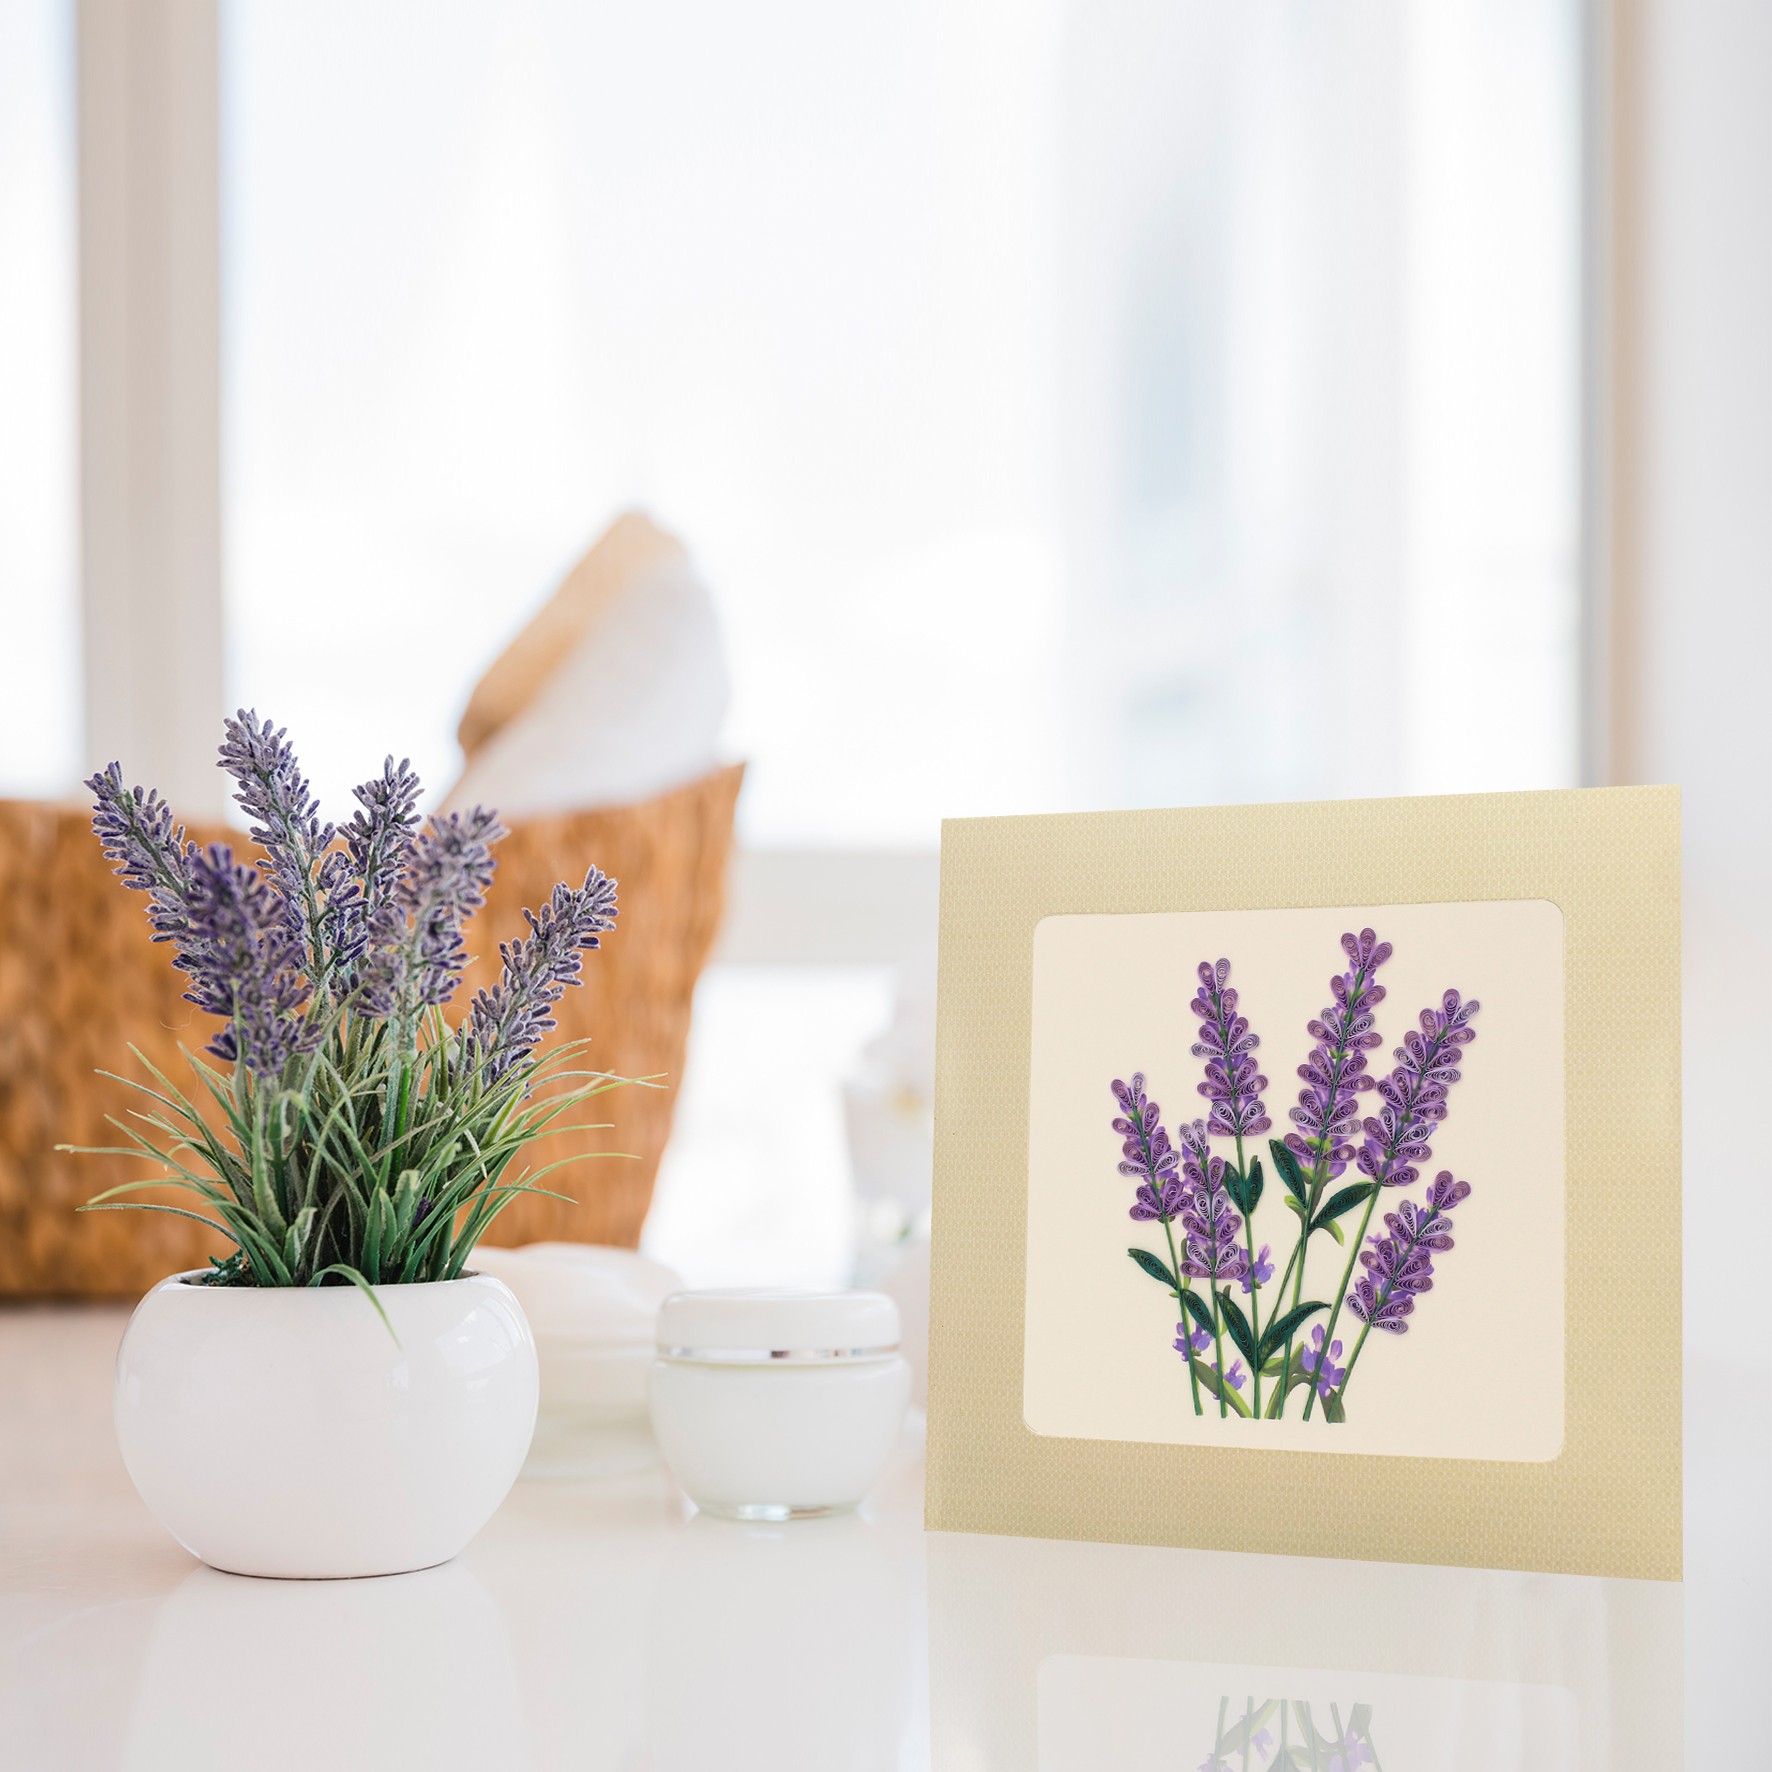 Thiệp Handmade - Thiệp Hoa Lavender nghệ thuật giấy xoắn (Quilling Card) - Tặng Kèm Khung Giấy Để Bàn - Thiệp chúc mừng sinh nhật, kỷ niệm, tình yêu, cảm ơn...